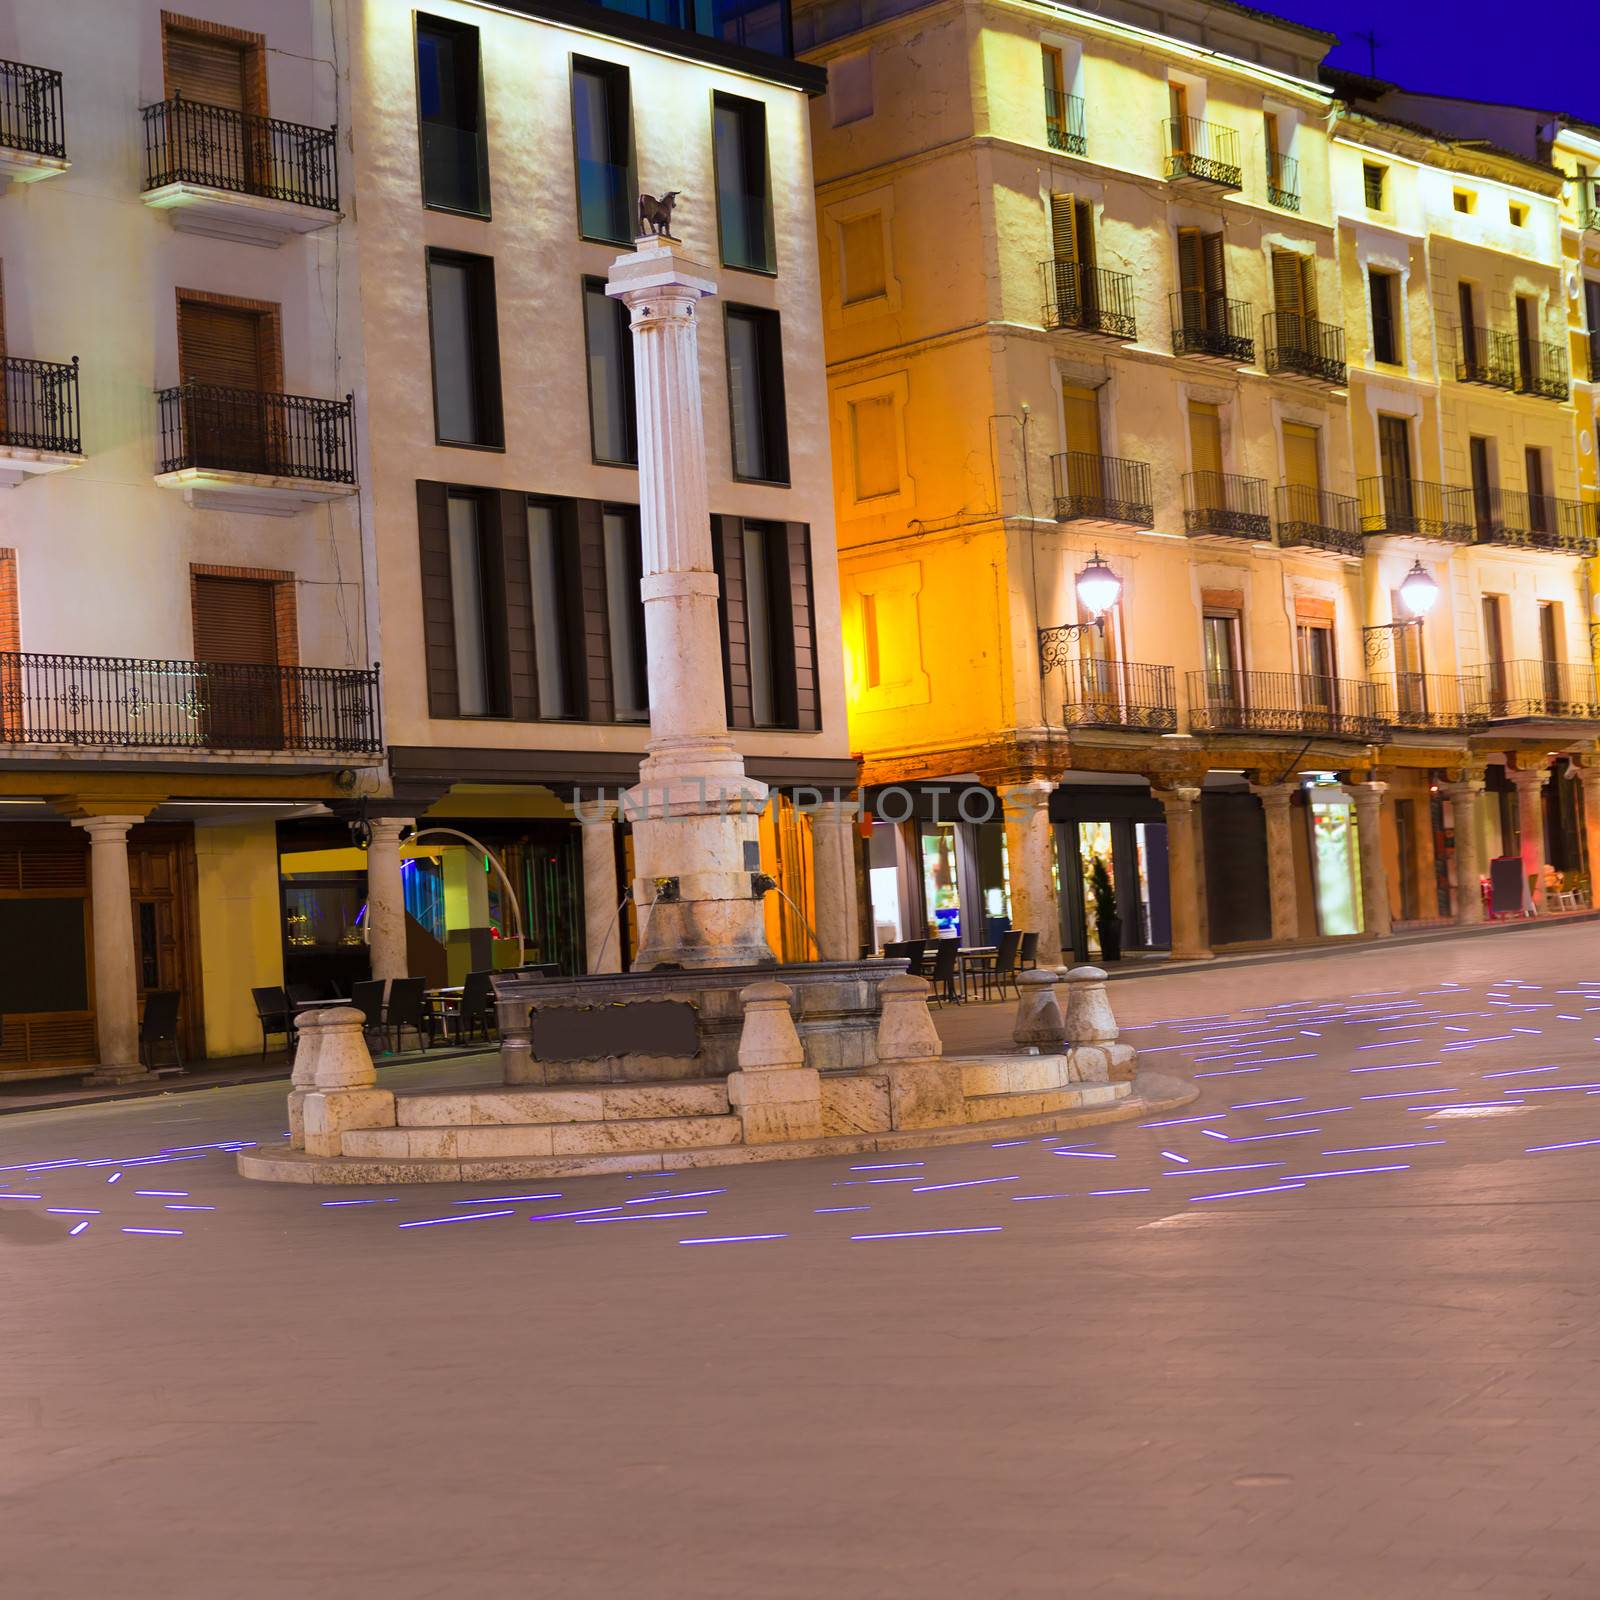 Aragon Teruel plaza el Torico Carlos Castel square Spain by lunamarina